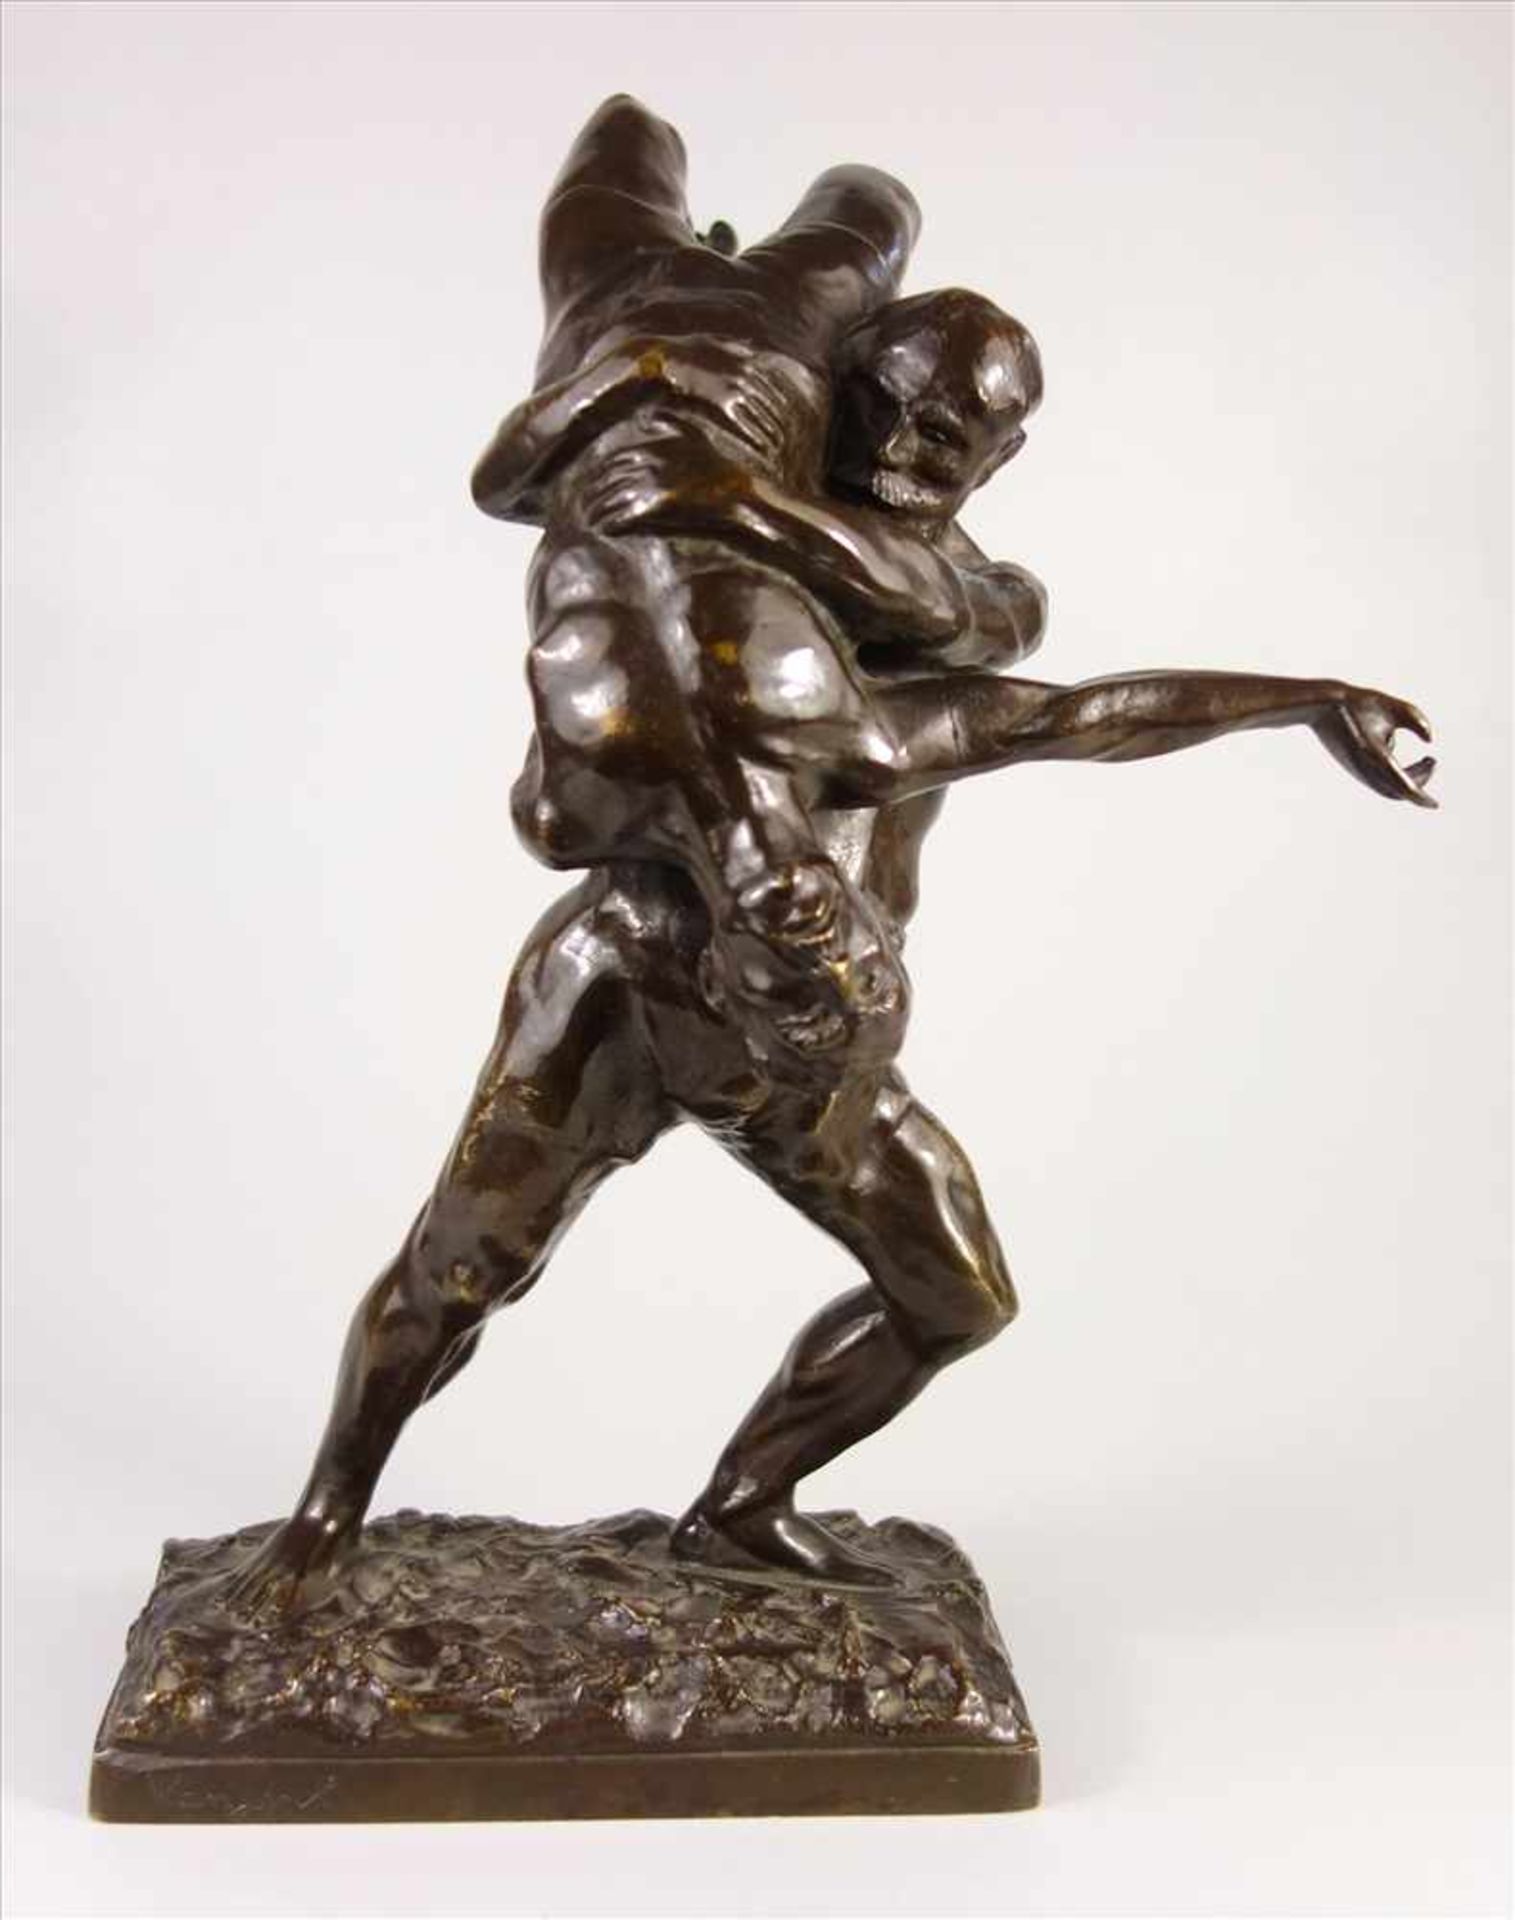 Joseph Alfred van Gent "Ringer", Bronze-Figurengruppe um 1900, van Gent, geb 1877; in Plinthe